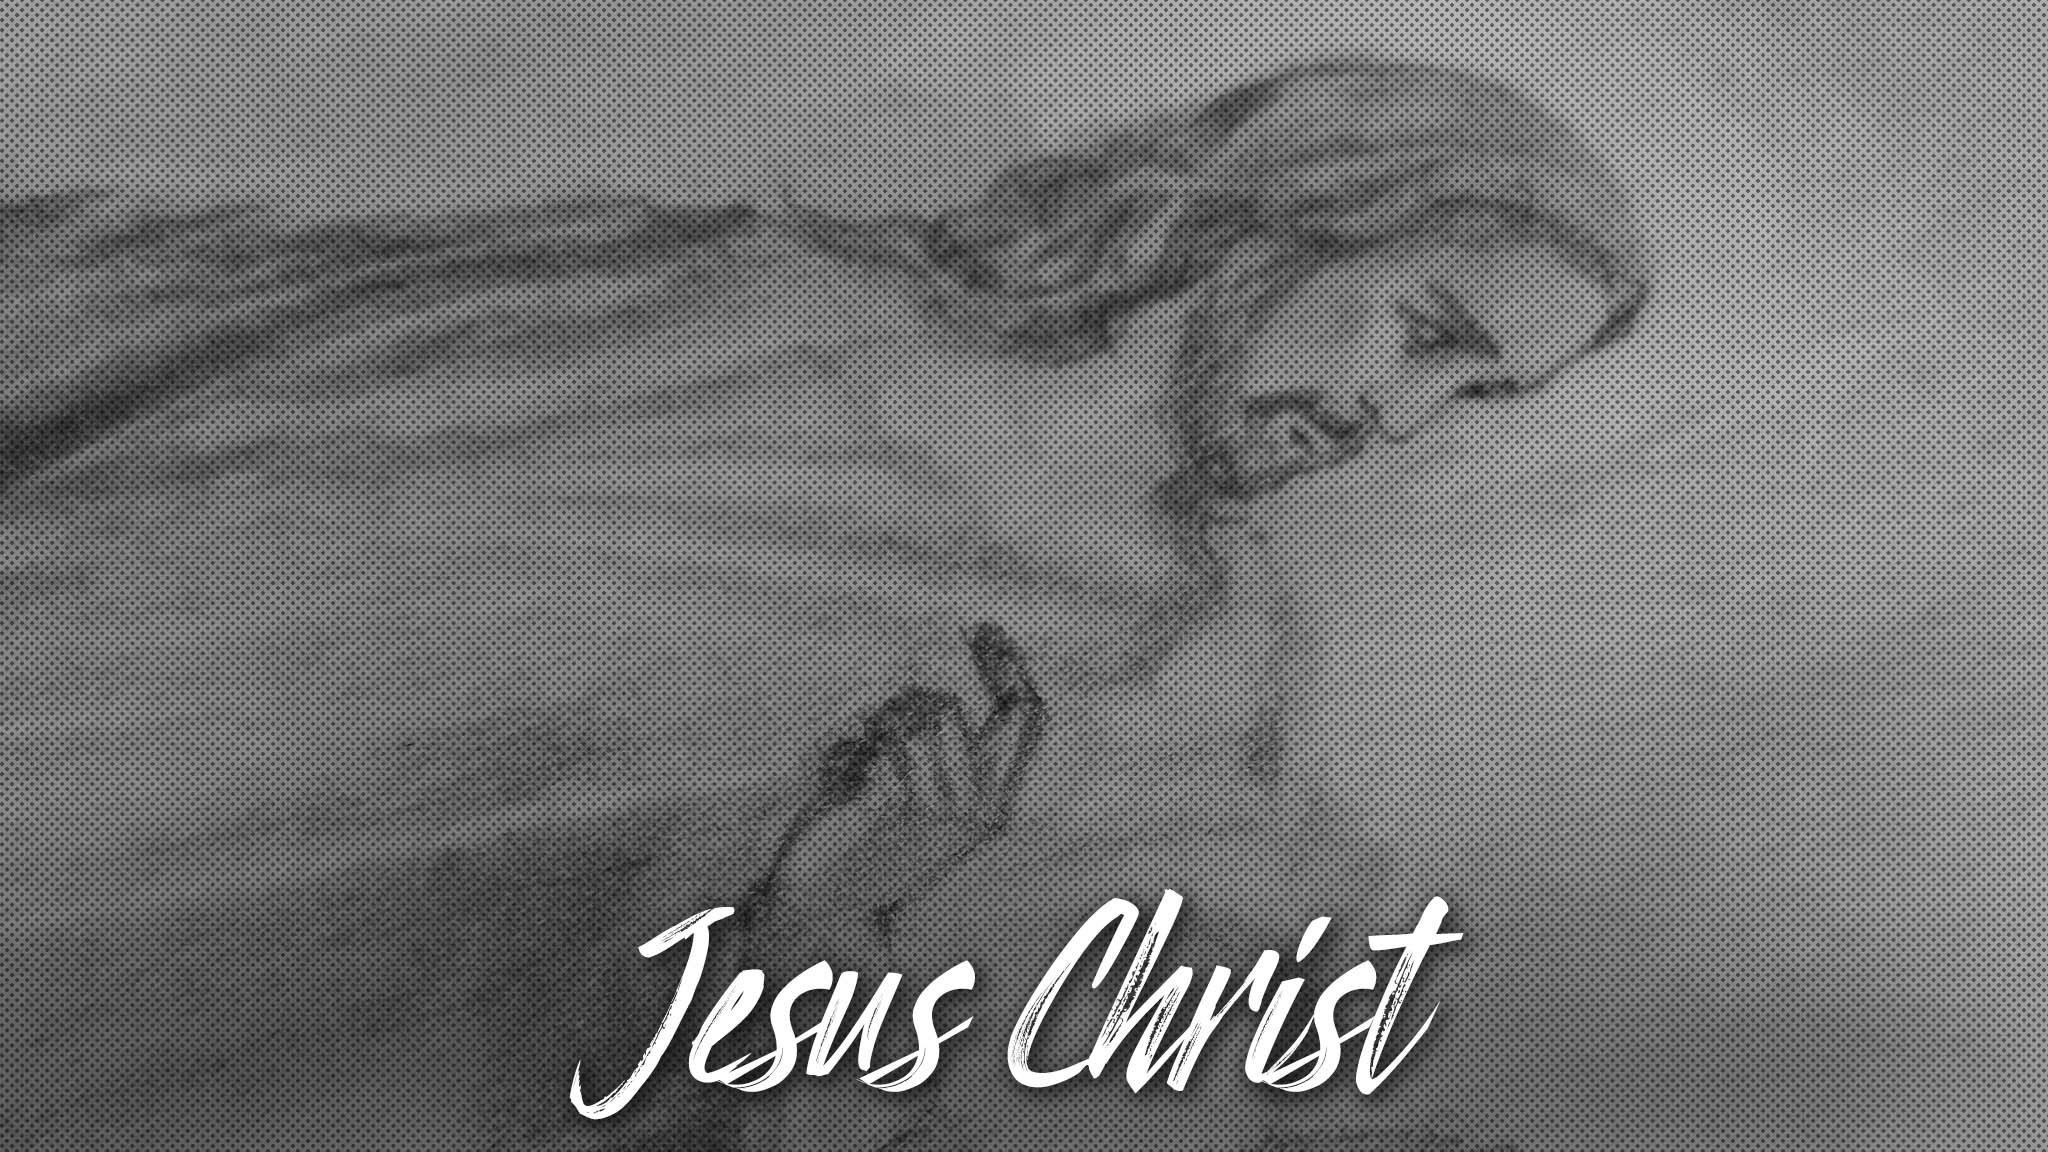 РИСУЮ карандашом Иисус Христос и ученики | Jesus Christ